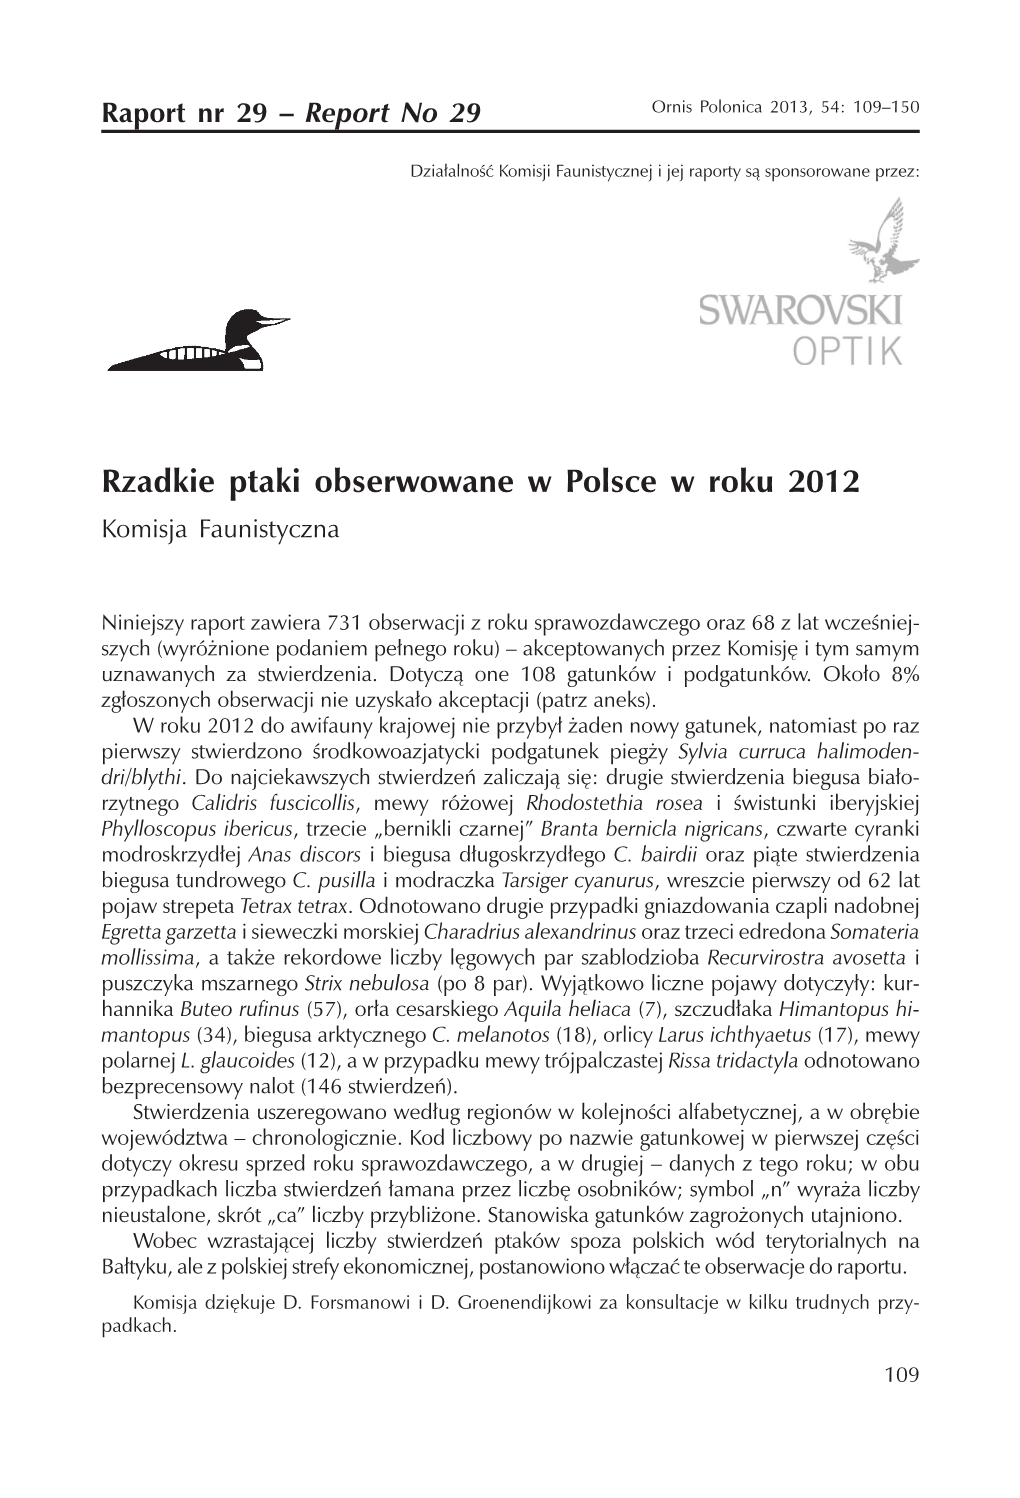 Rzadkie Ptaki Obserwowane W Polsce W Roku 2012 Komisja Faunistyczna